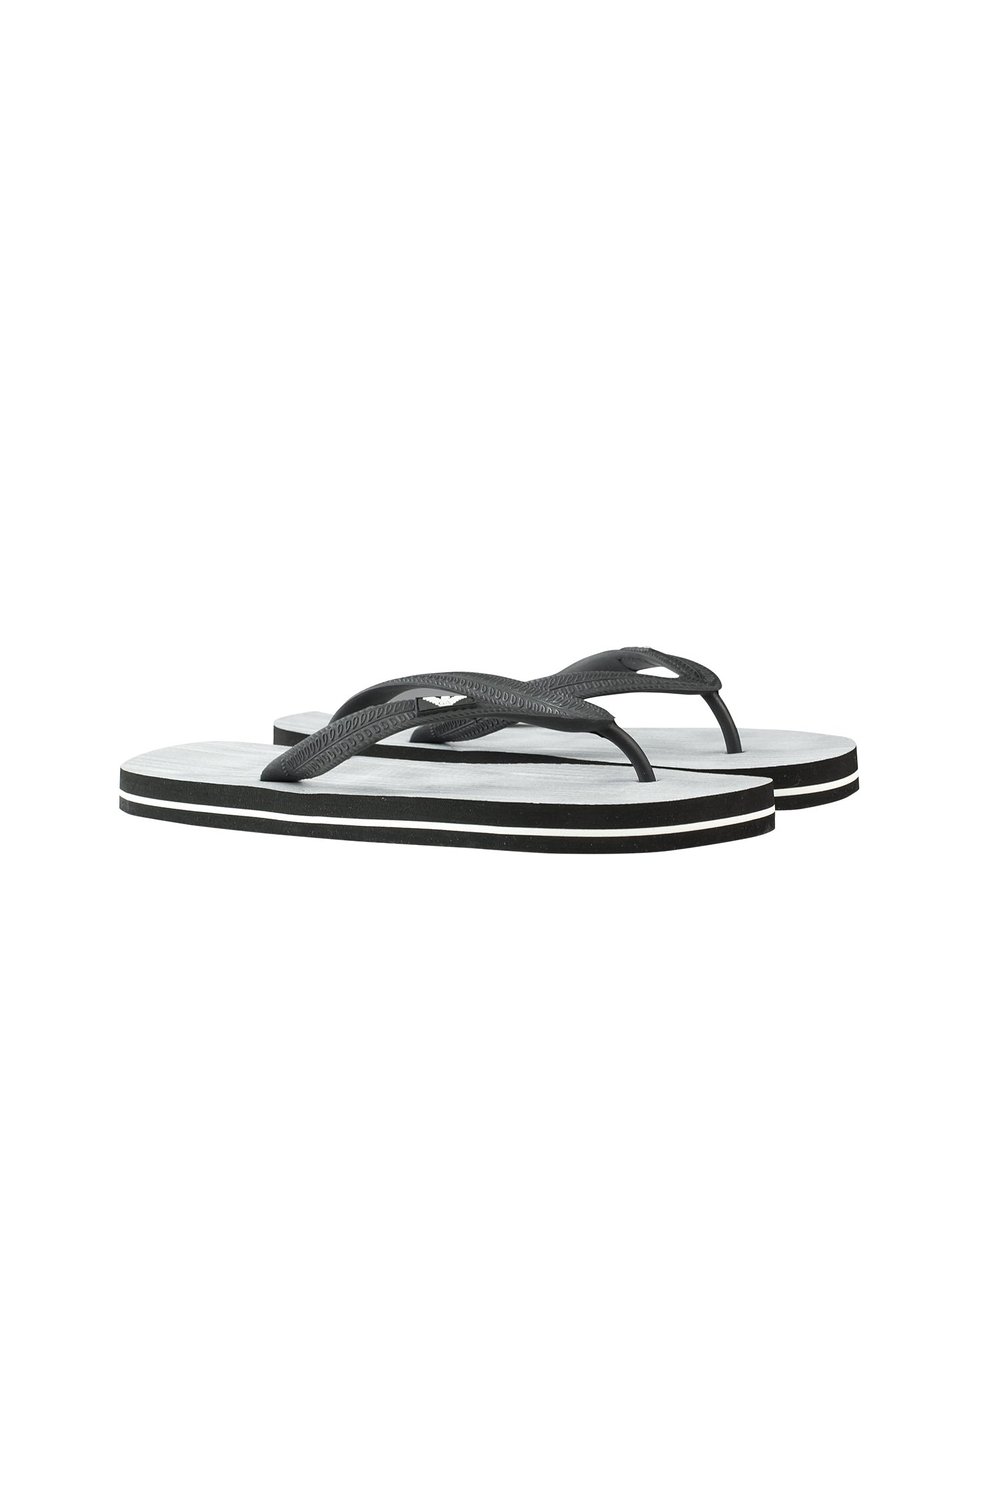 EMPORIO ARMANI Beach Flip Flop Sandals 211301-5P479-08343 - Heather ...